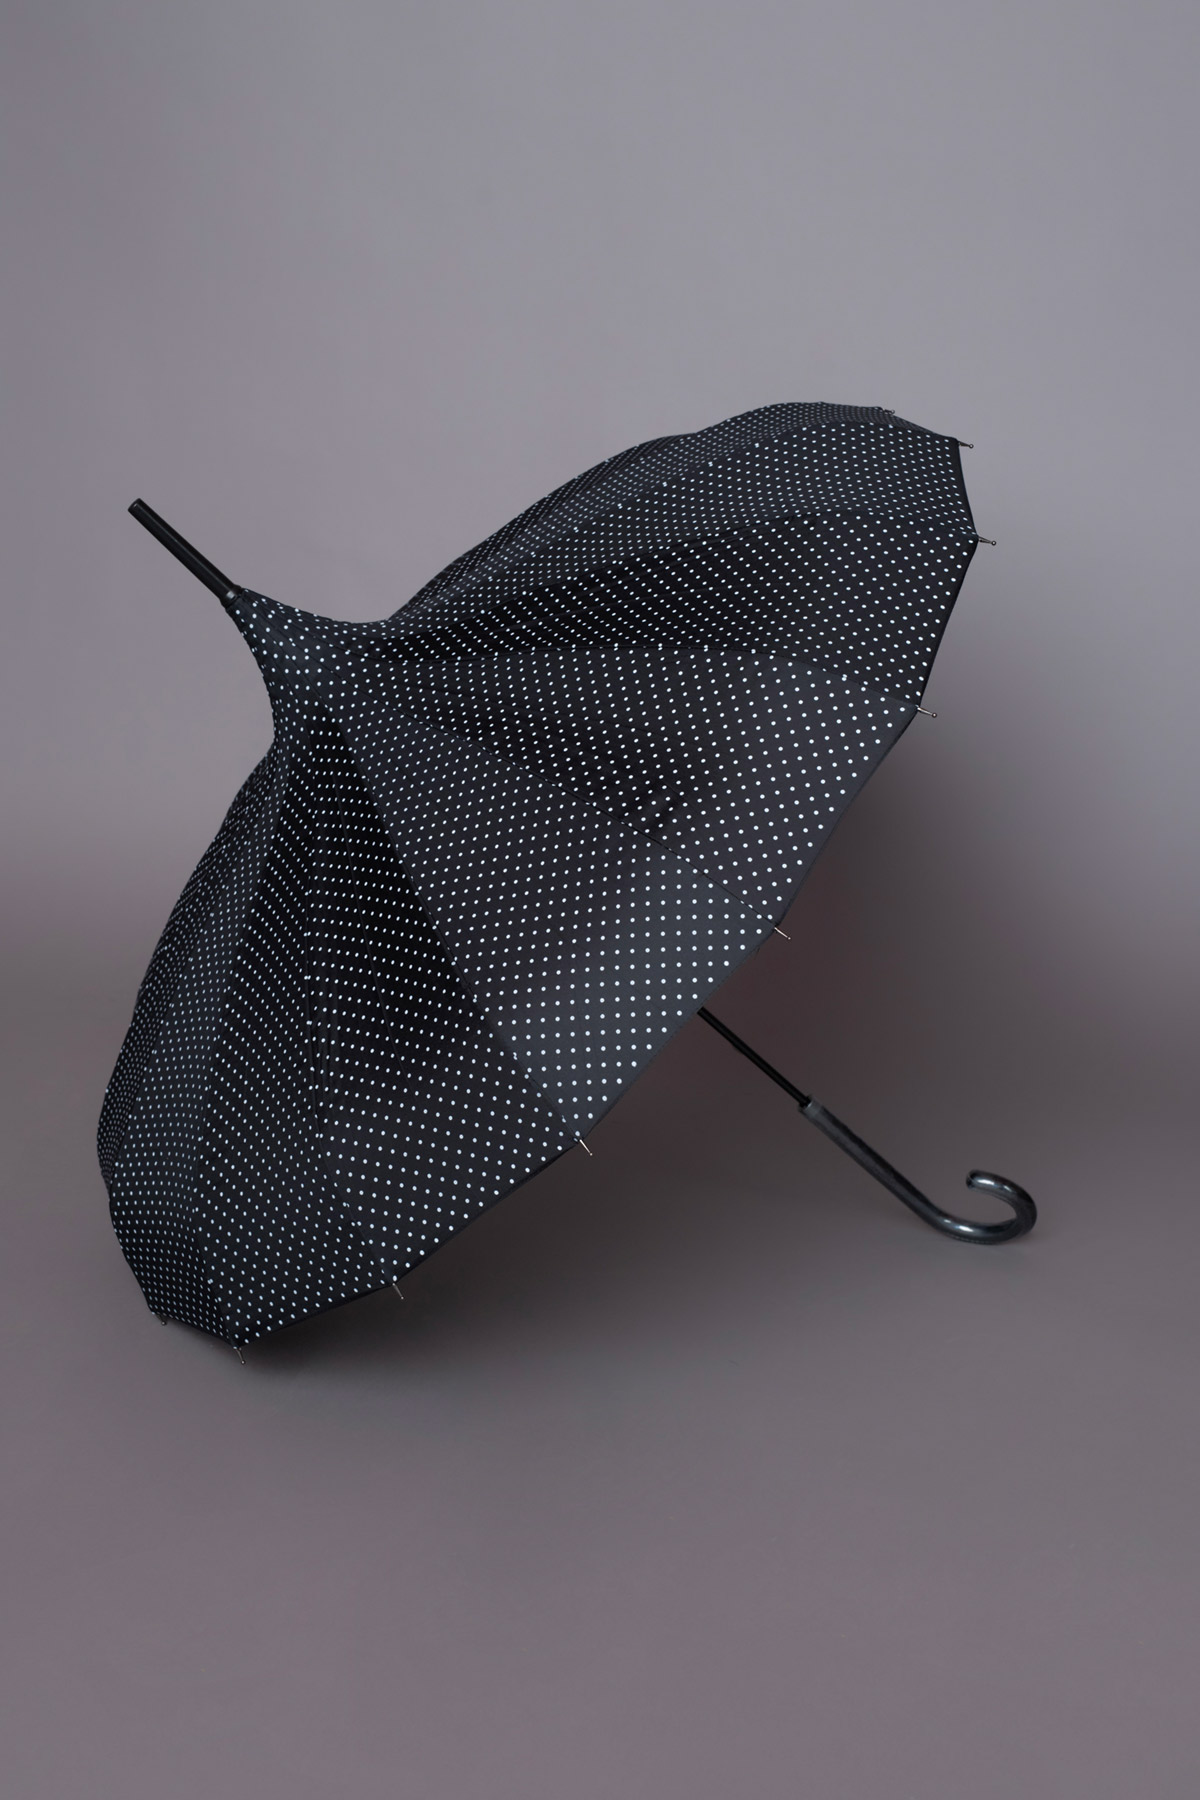 μαύρη πουά ομπρέλα σε σχήμα παγόδα ιδανική για ήλιο ή βροχή